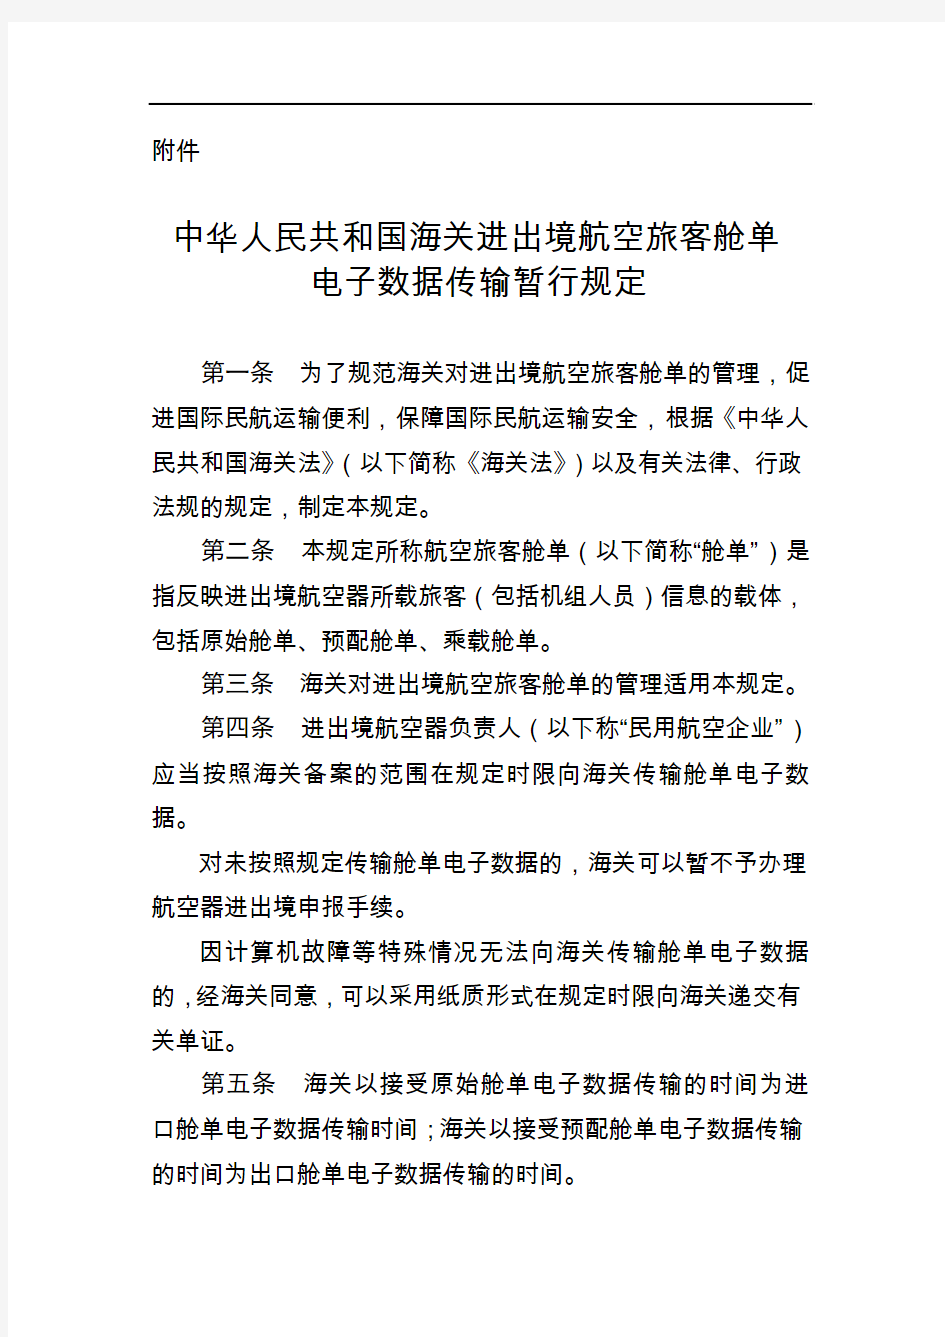 中华人民共和国海关进出境航空旅客舱单电子数据传输暂行规定